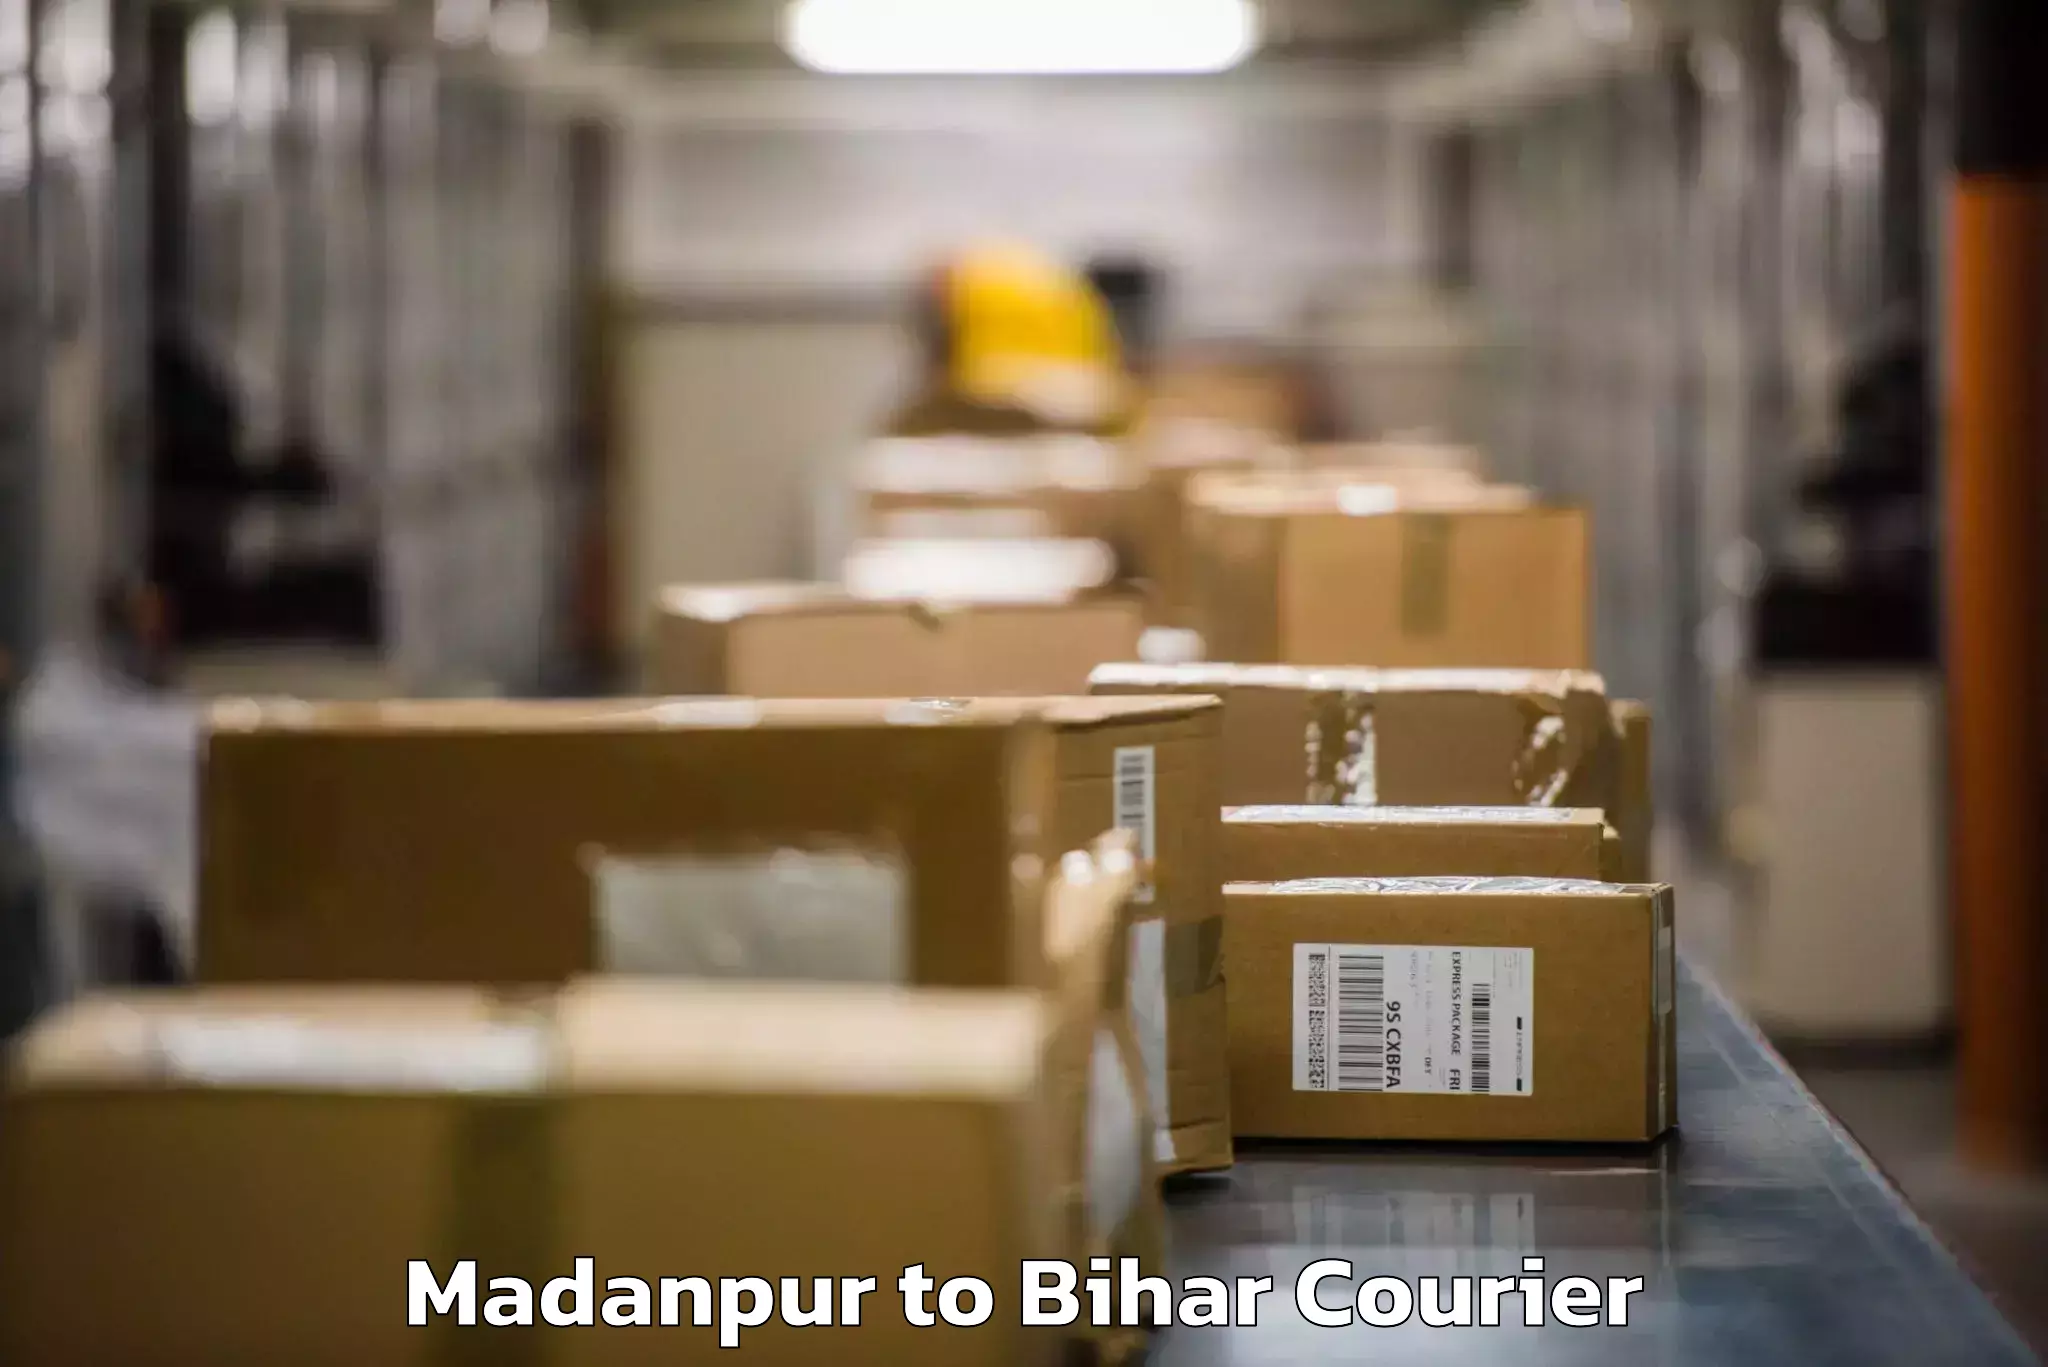 Baggage transport scheduler Madanpur to Bihta